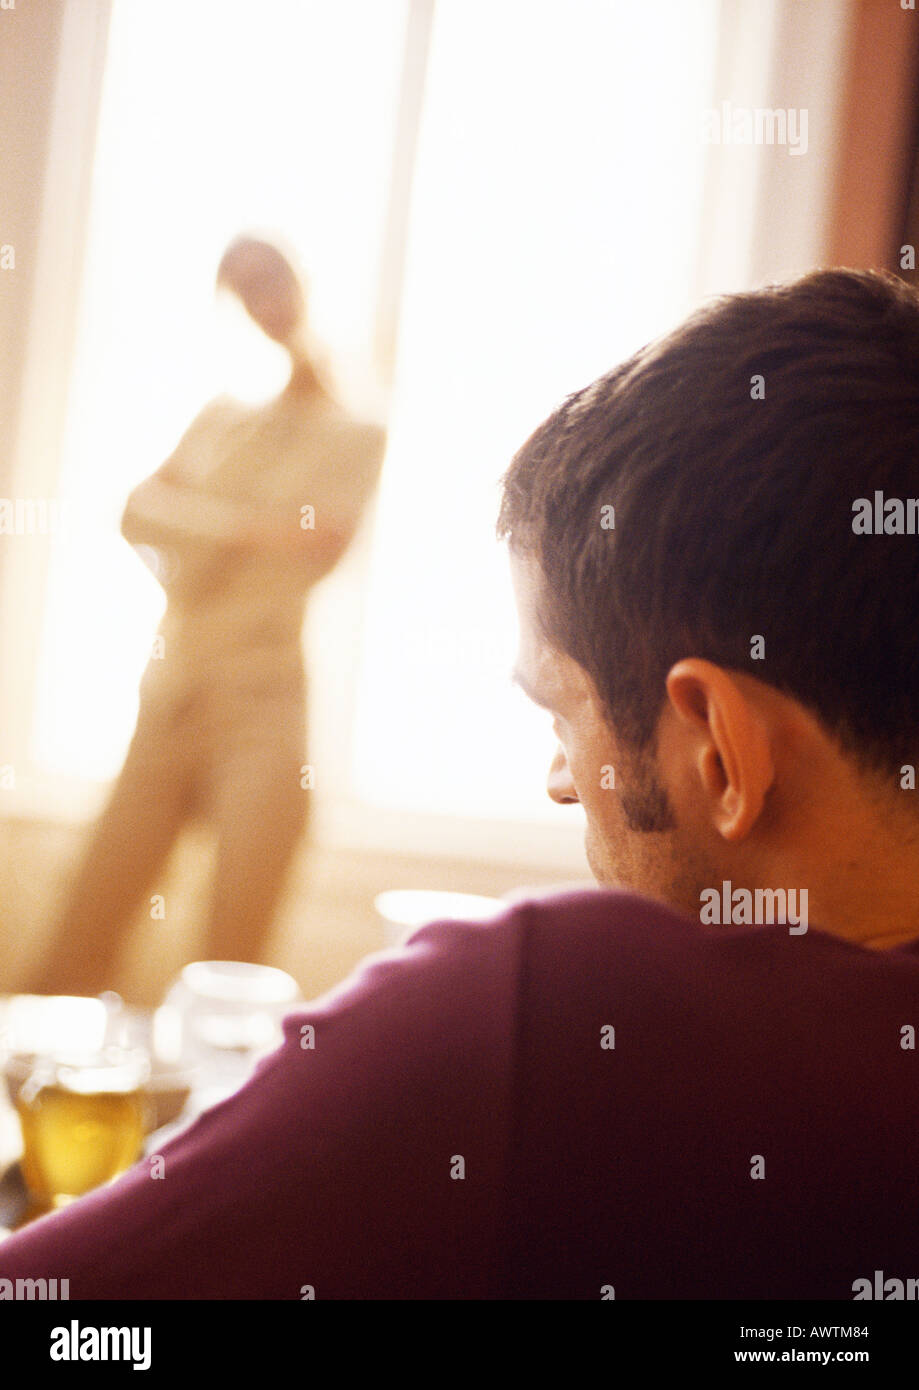 Uomo seduto, donna in piedi con le braccia incrociate davanti windown in background. Foto Stock